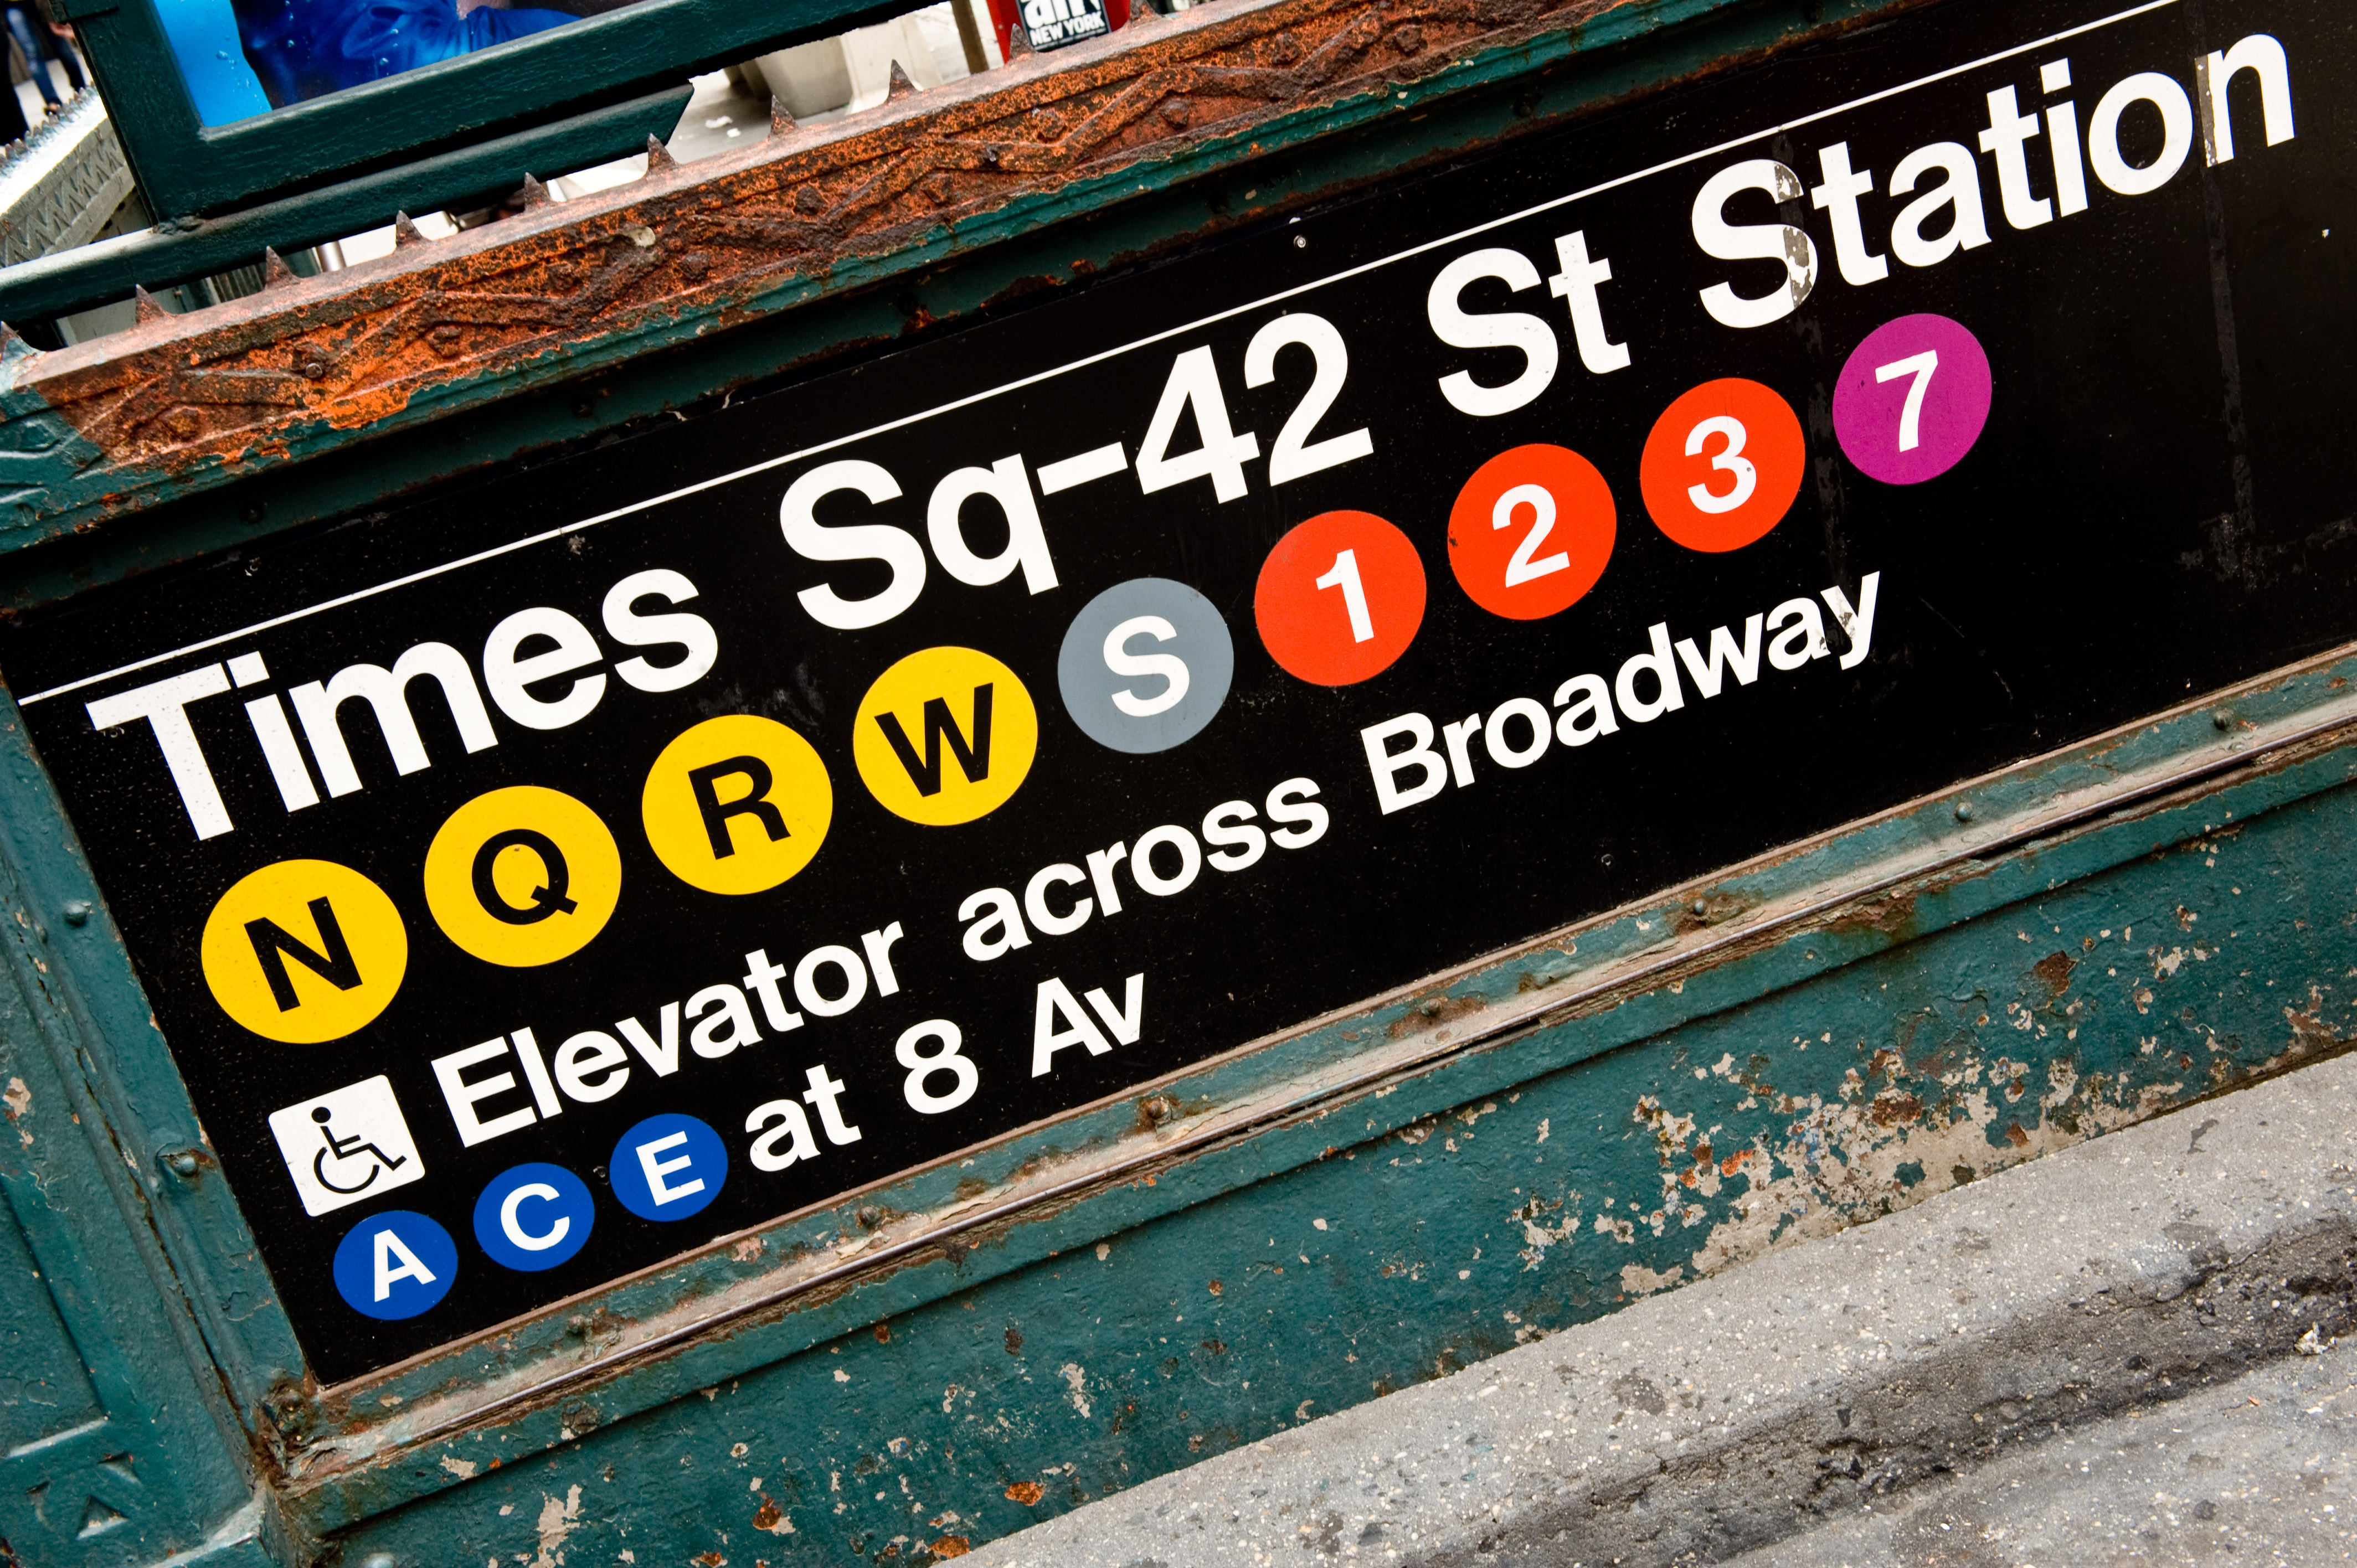 Subway - New York City